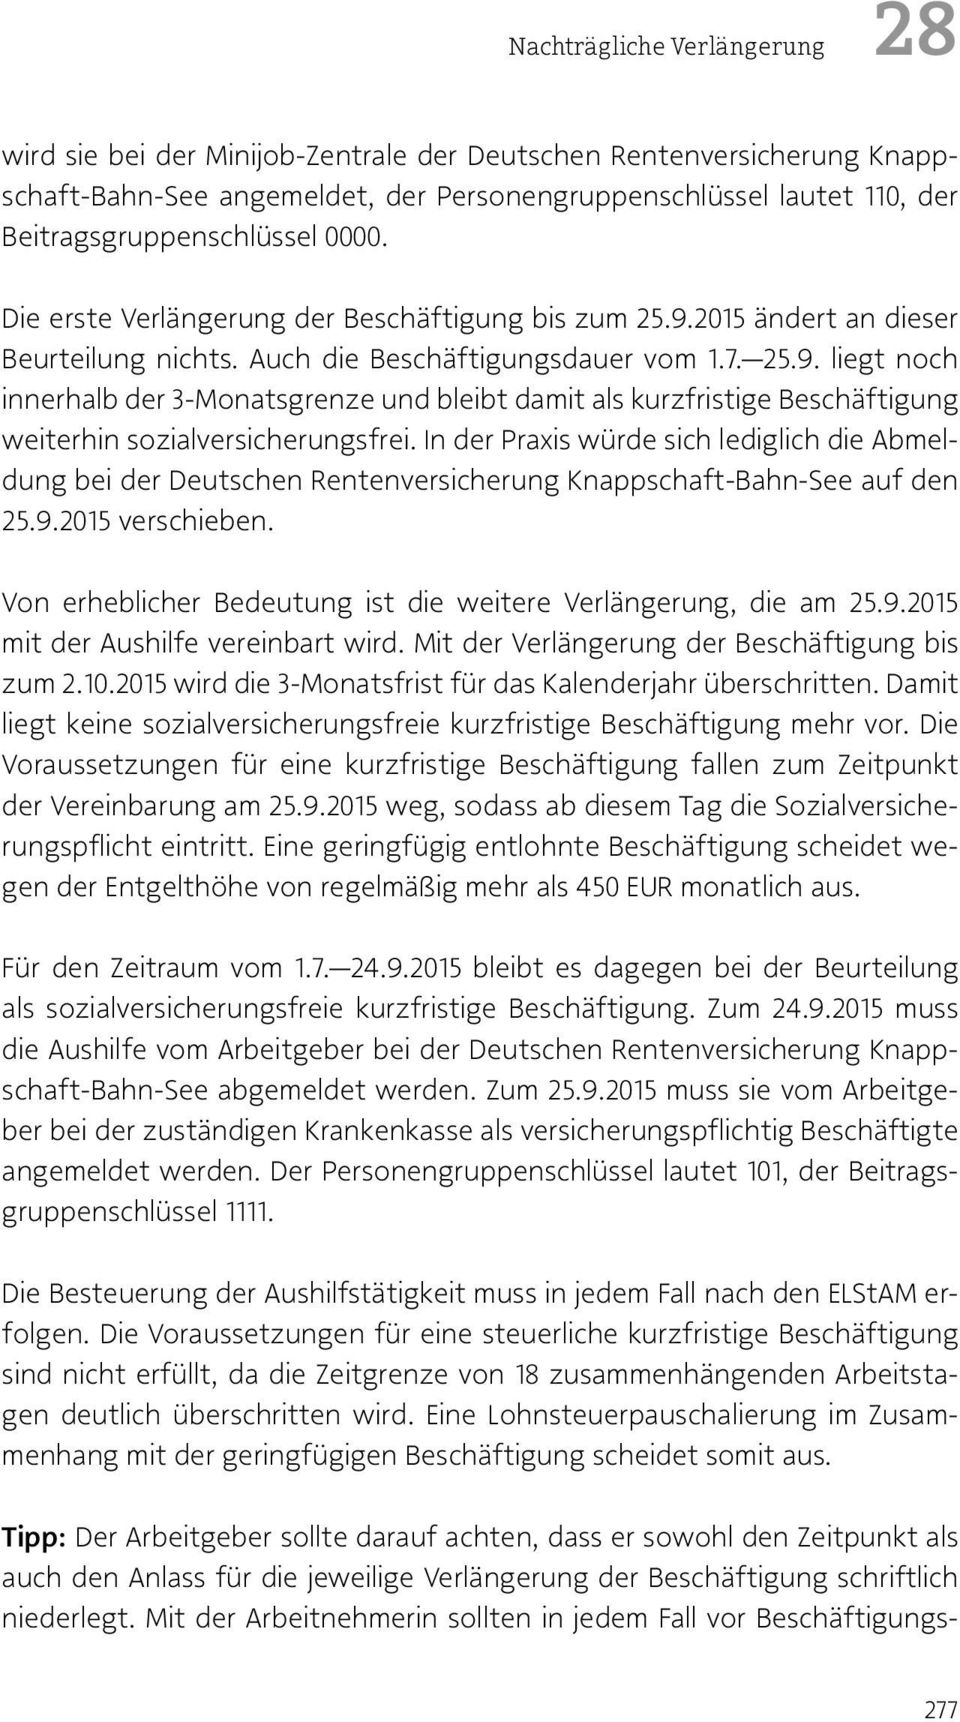 In der Praxis würde sich lediglich die Abmeldung bei der Deutschen Rentenversicherung Knappschaft-Bahn-See auf den 25.9.2015 verschieben.